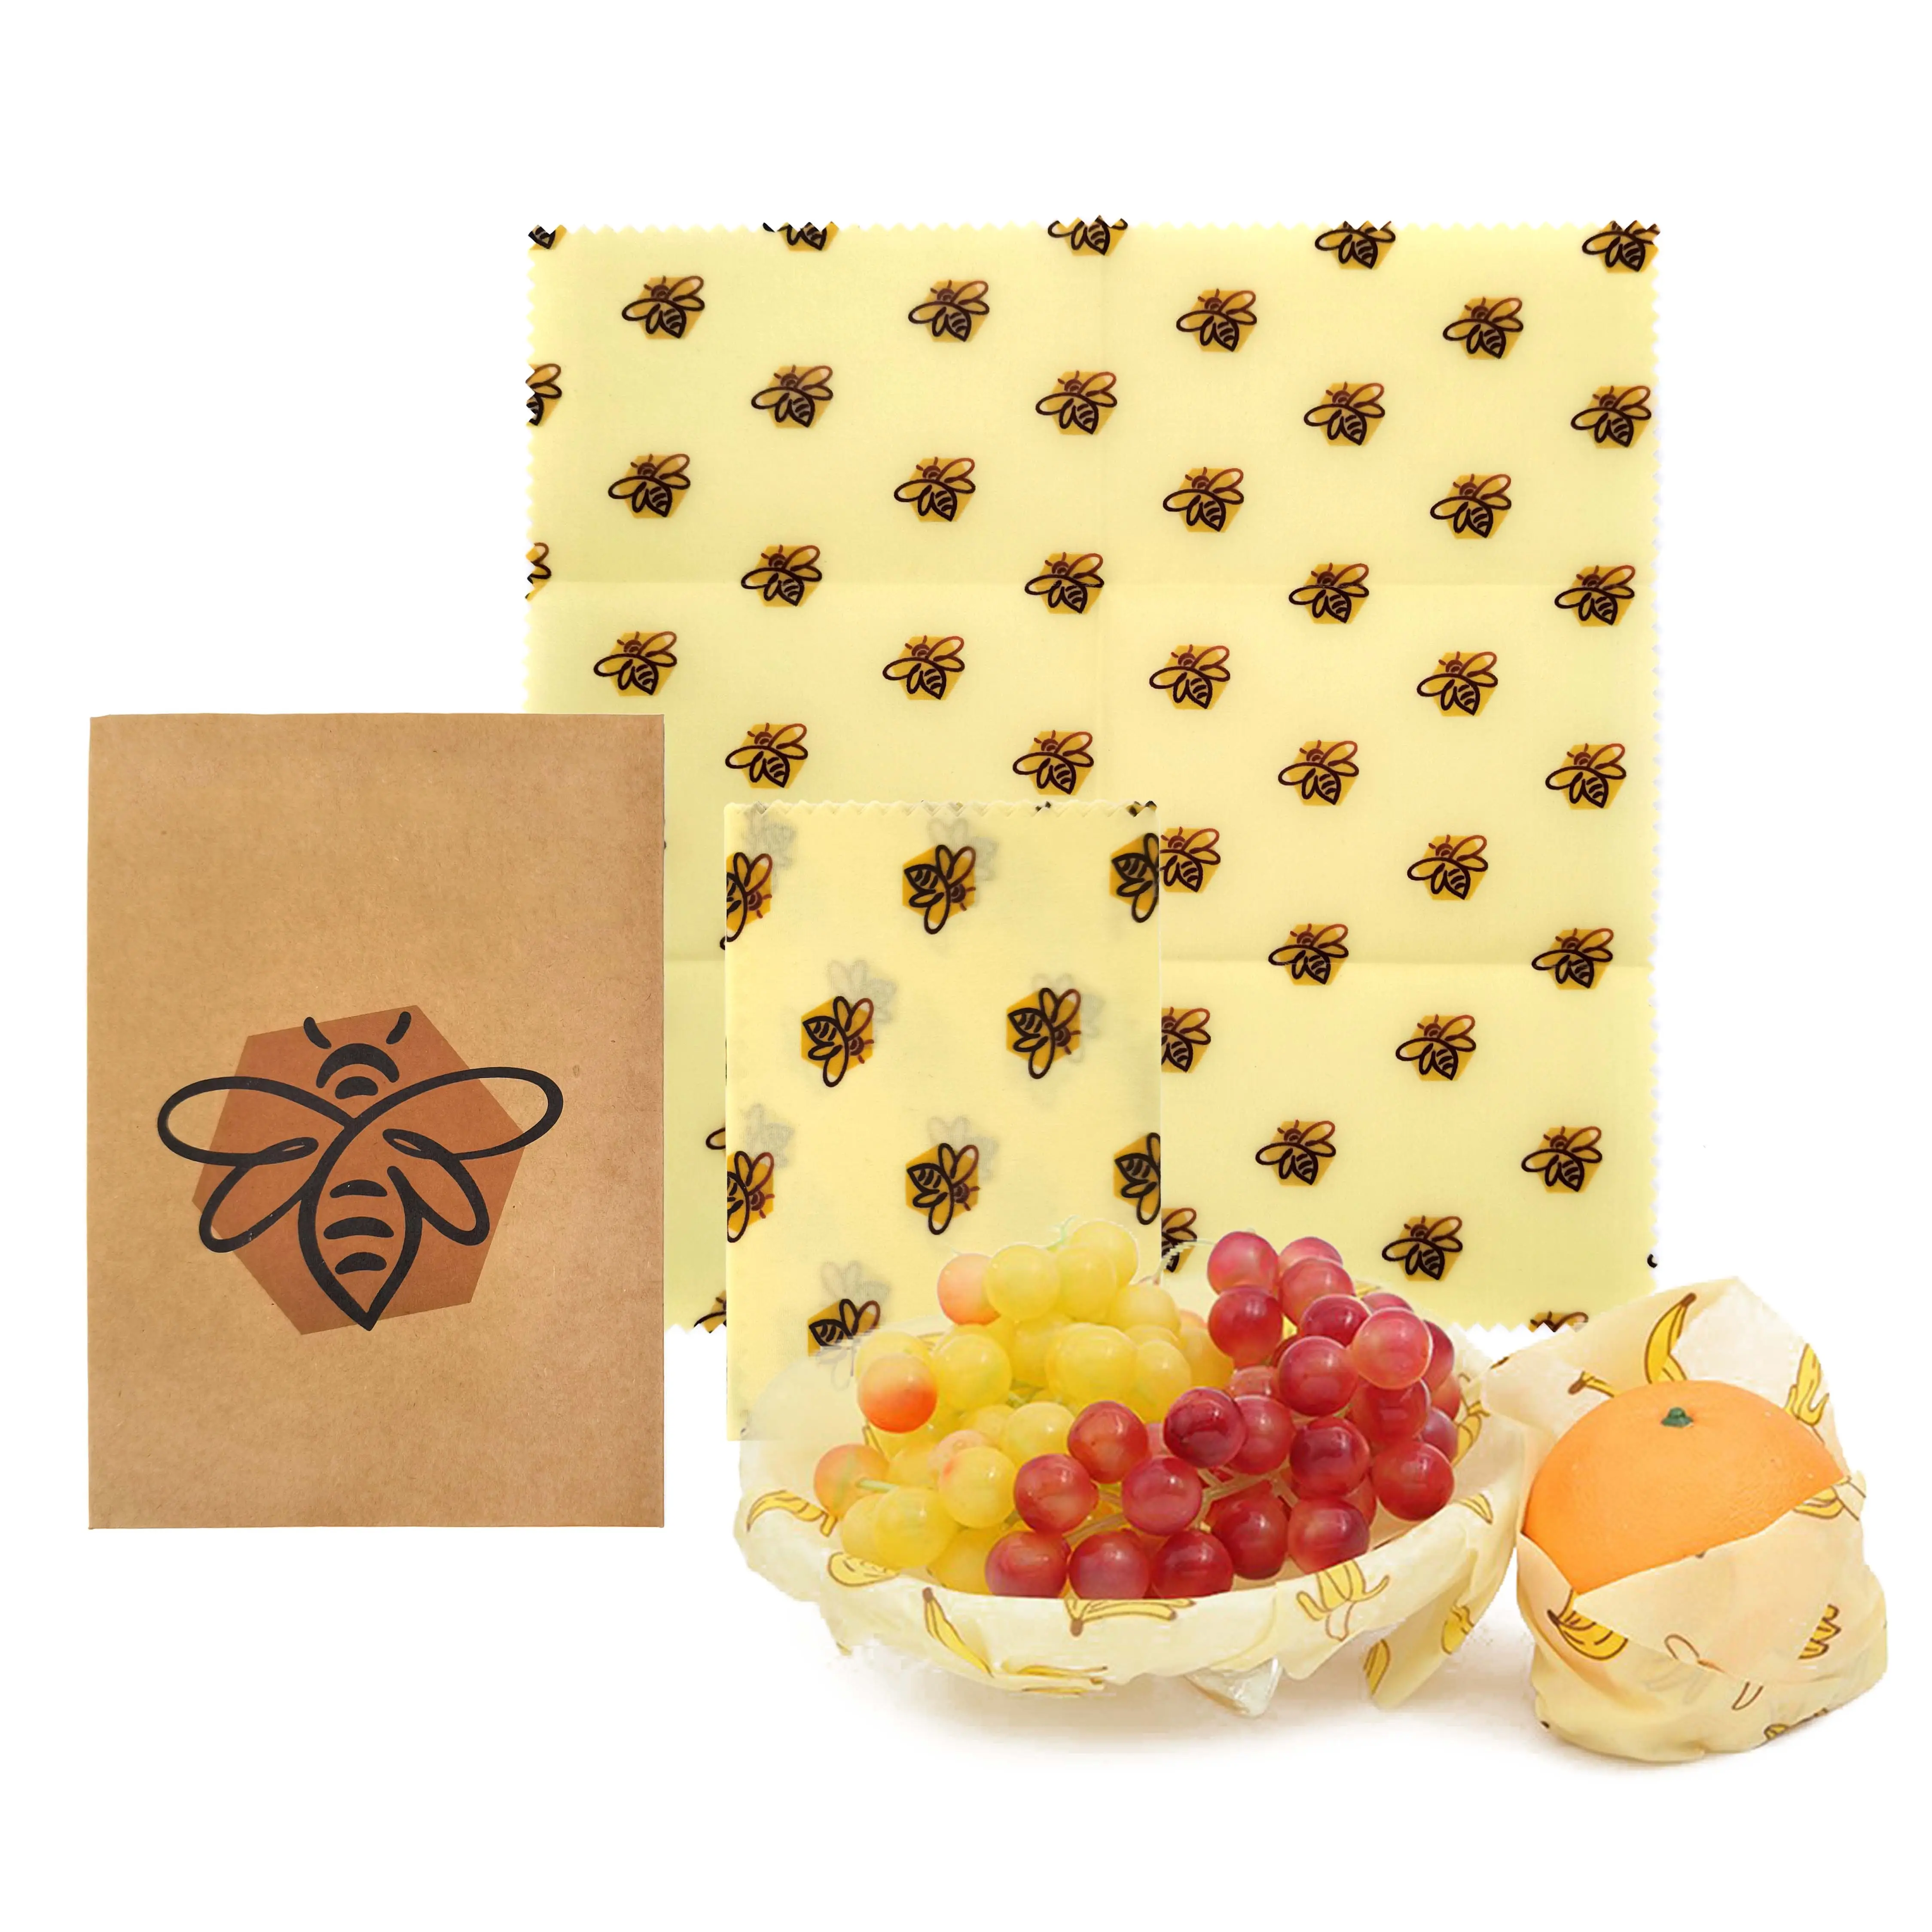 Fett dichte wieder verwendbare Lagerung in Lebensmittel qualität Waxed Bee Bees Wax Wraps Geschenk papier Bienenwachs Food Wrap